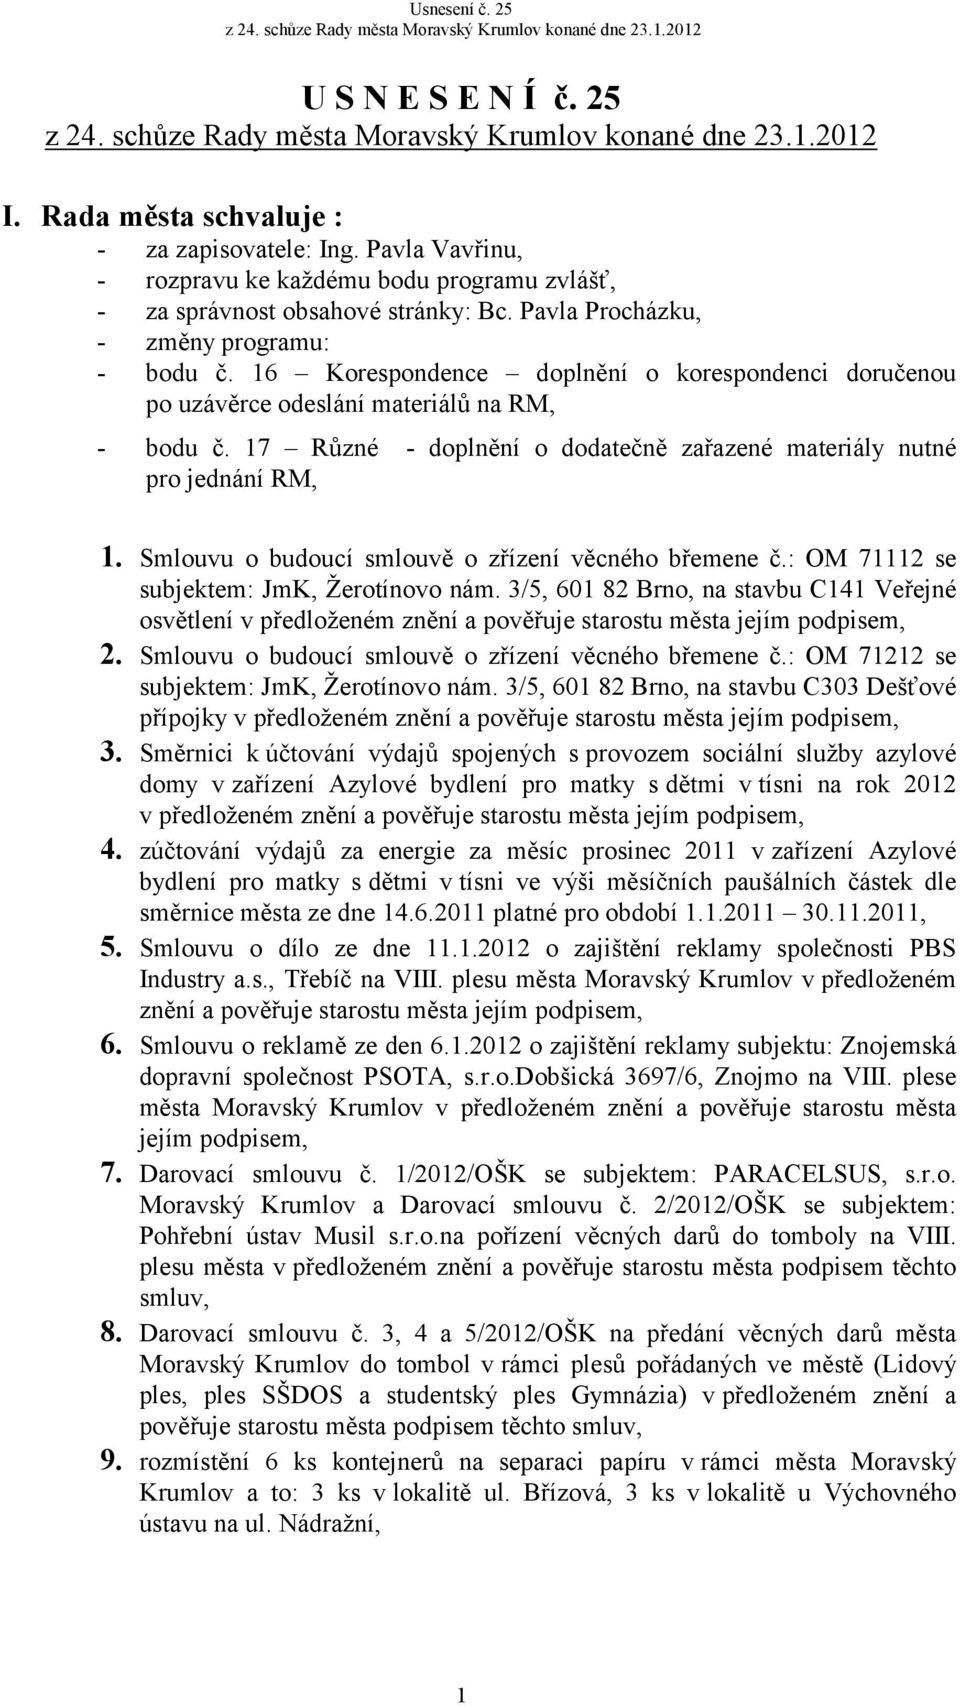 17 Různé - doplnění o dodatečně zařazené materiály nutné pro jednání RM, 1. Smlouvu o budoucí smlouvě o zřízení věcného břemene č.: OM 71112 se subjektem: JmK, Žerotínovo nám.